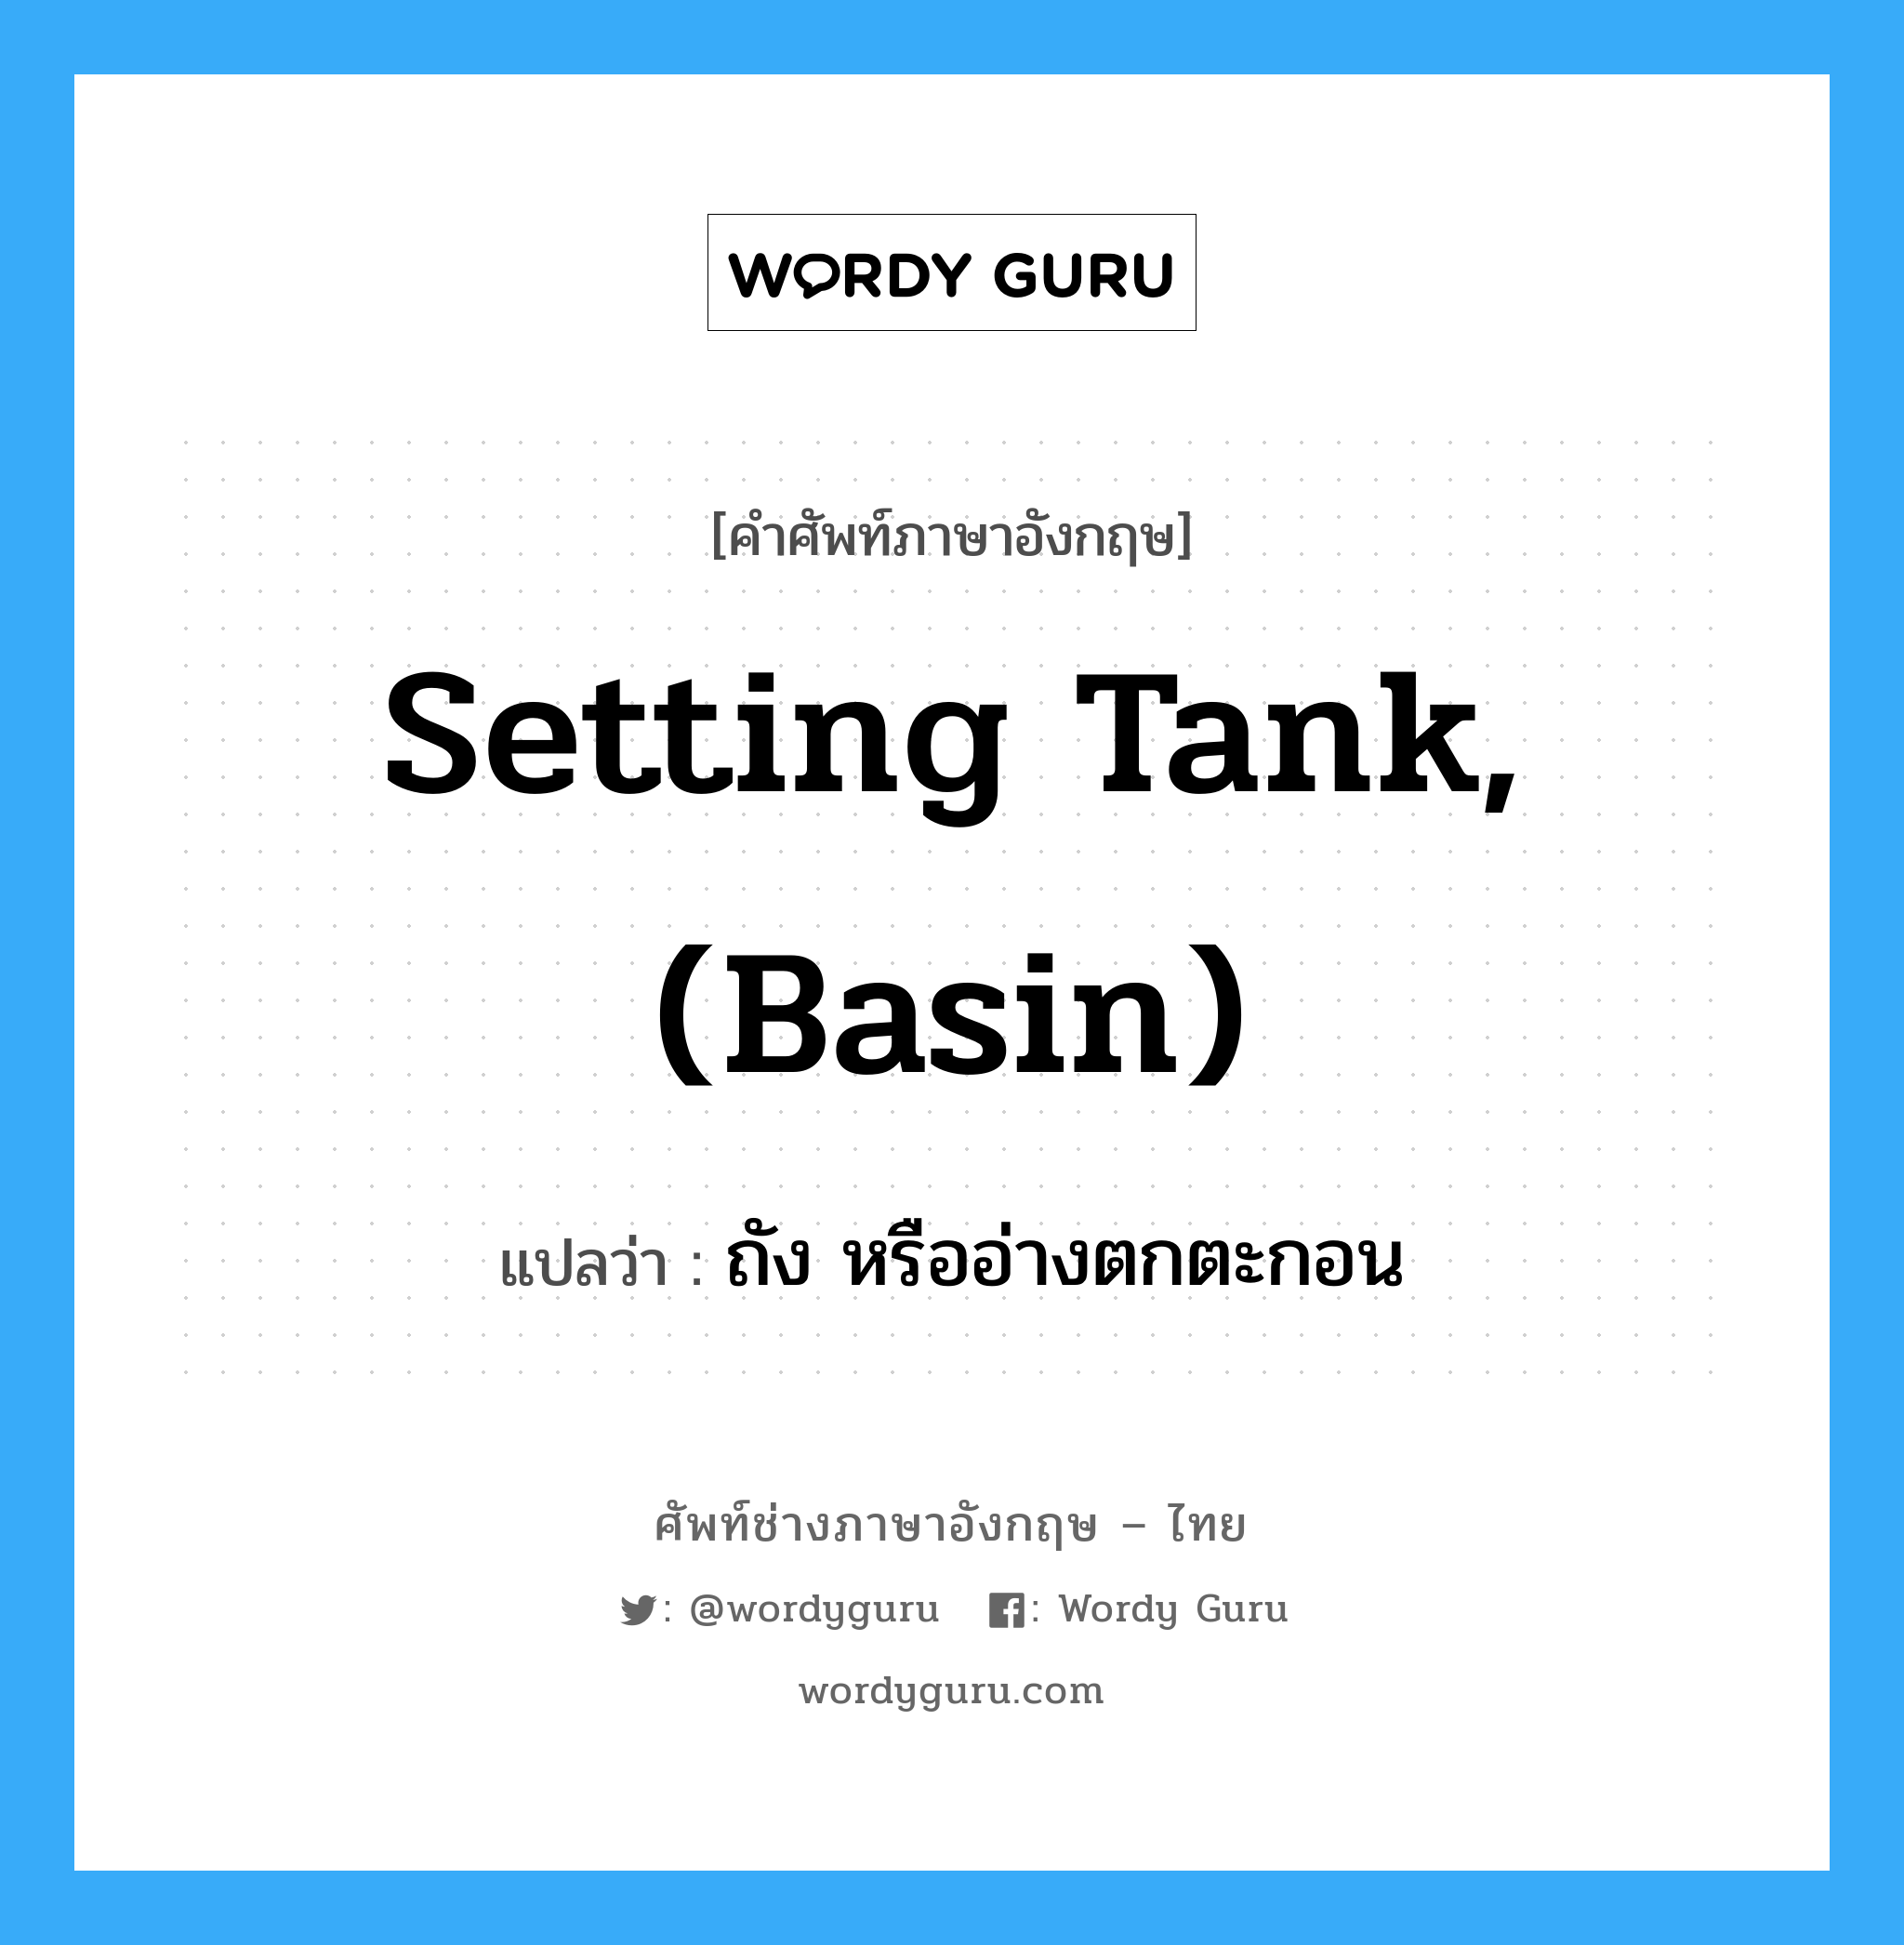 ถัง หรืออ่างตกตะกอน ภาษาอังกฤษ?, คำศัพท์ช่างภาษาอังกฤษ - ไทย ถัง หรืออ่างตกตะกอน คำศัพท์ภาษาอังกฤษ ถัง หรืออ่างตกตะกอน แปลว่า setting tank, (basin)